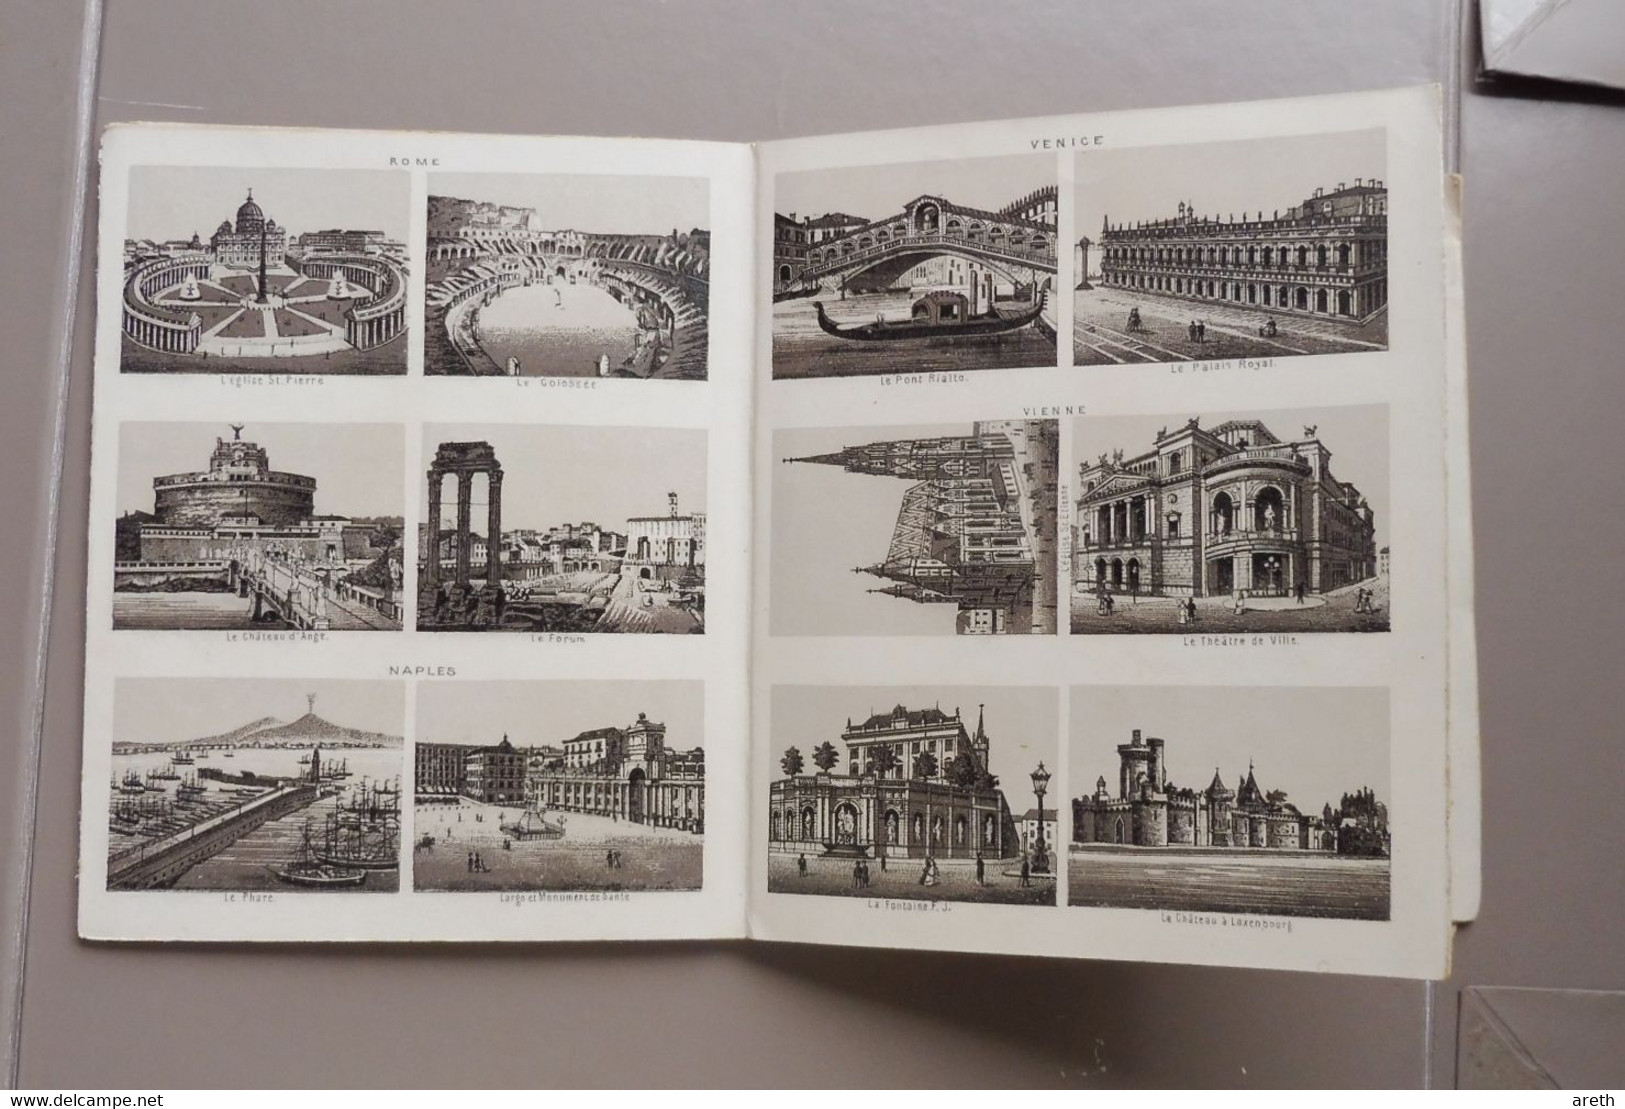 Ancien cahier contenant en dépliant des vignettes/ dessins/photos de differentes villes